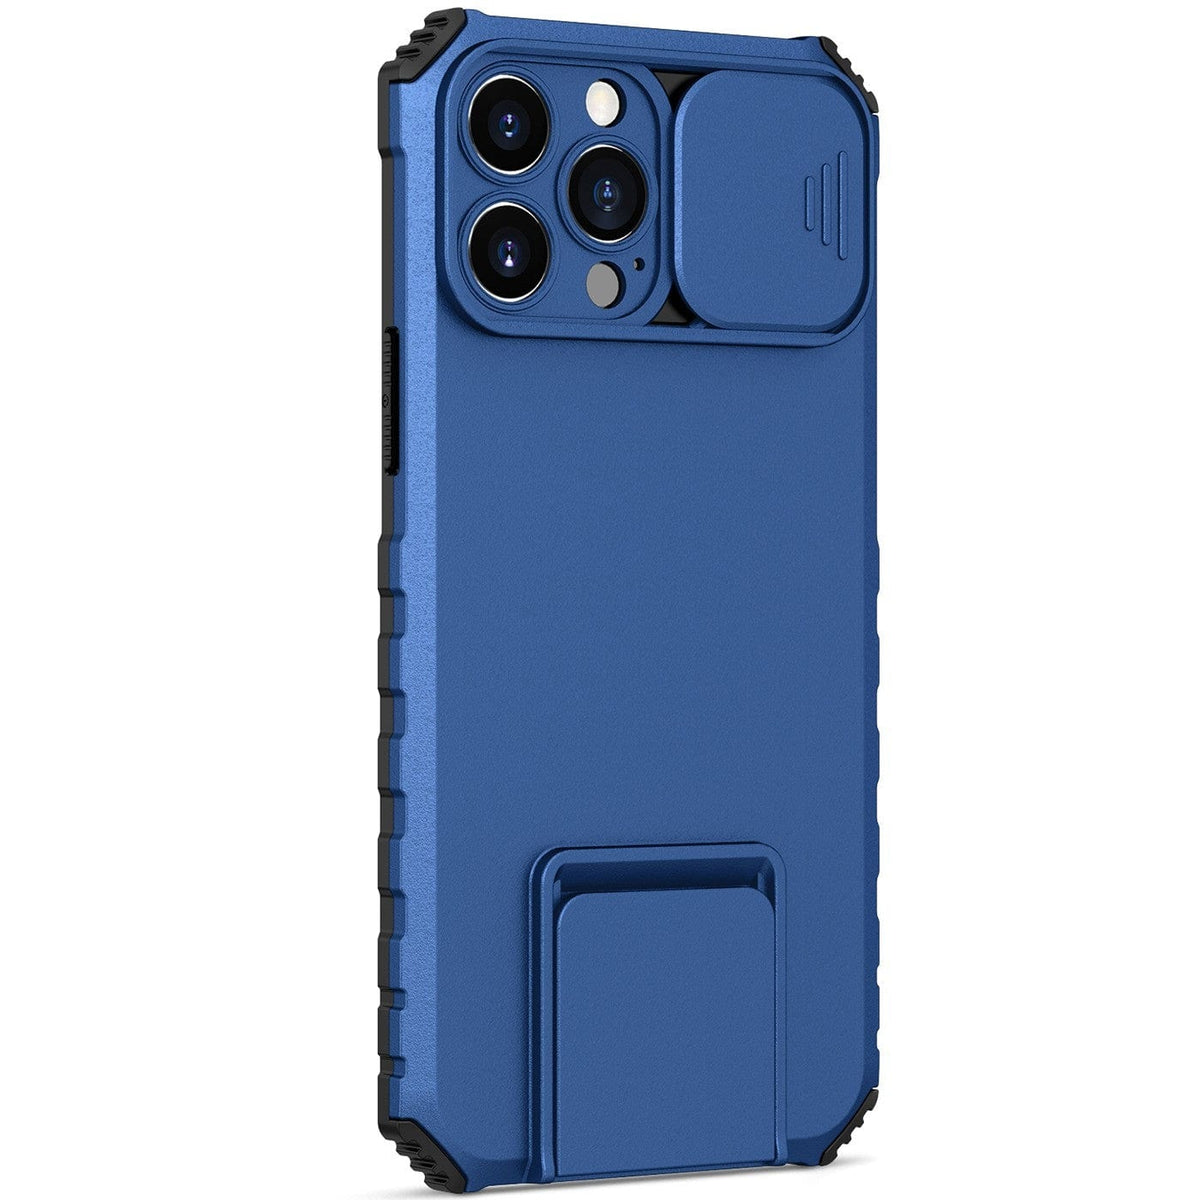 Husa Defender cu Stand pentru iPhone 13, Albastru, Suport reglabil, Antisoc, Protectie glisanta pentru camera